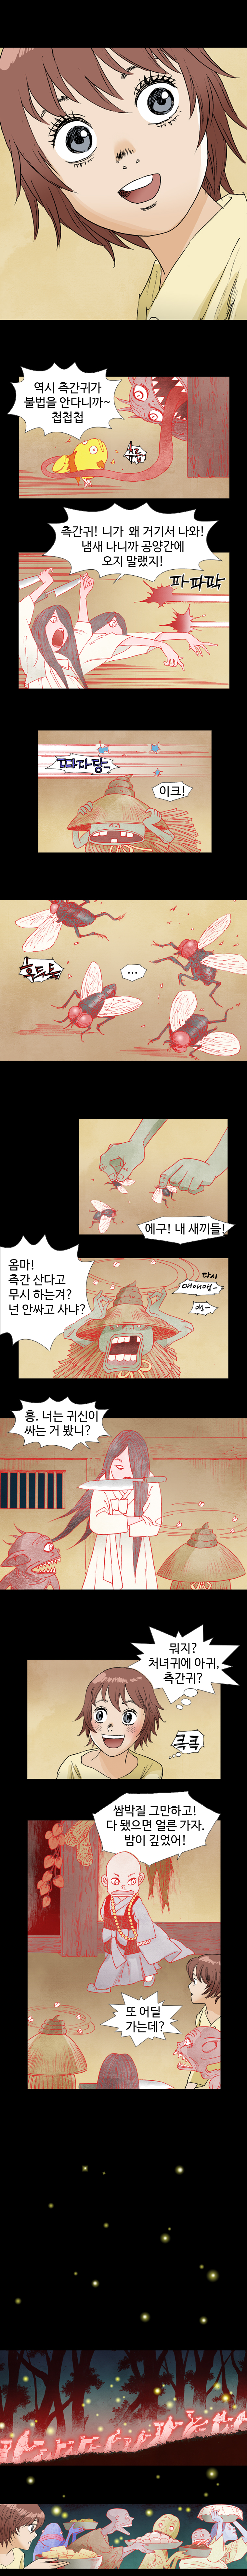 웹툰 백초월 1화-10